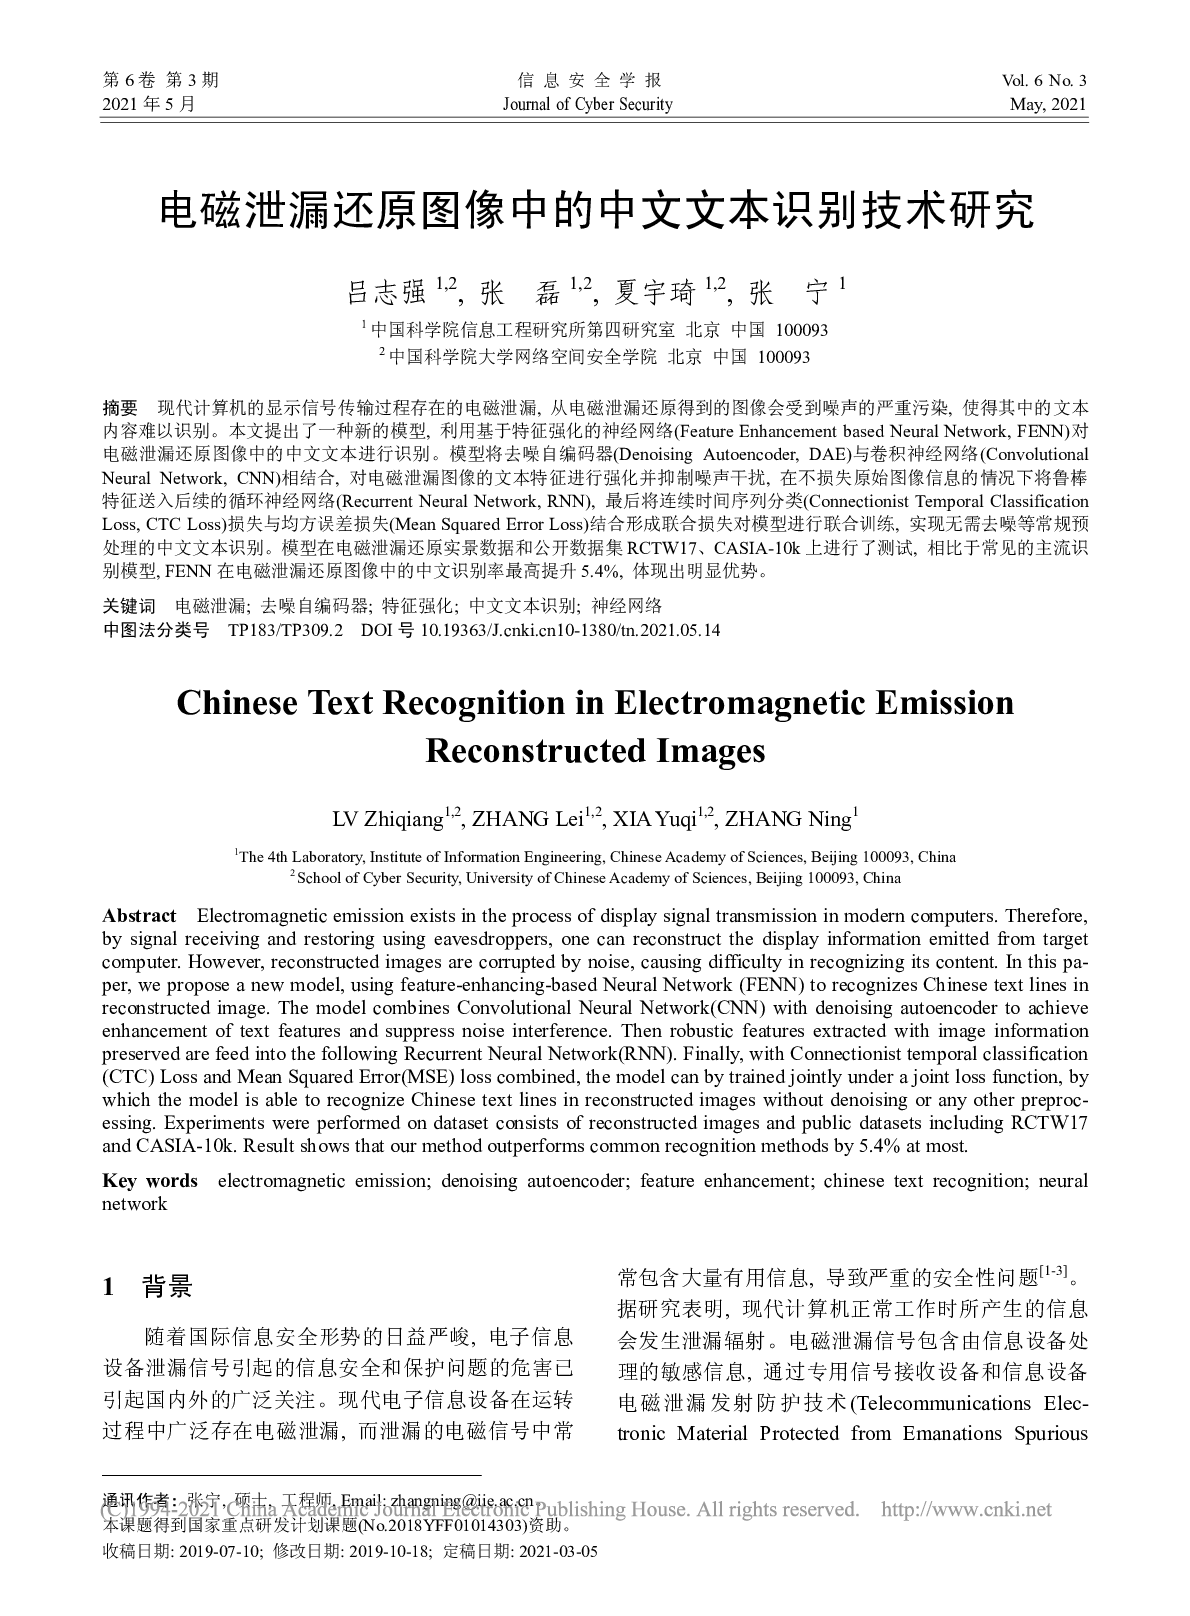 电磁泄漏还原图像中的中文文本识别技术研究